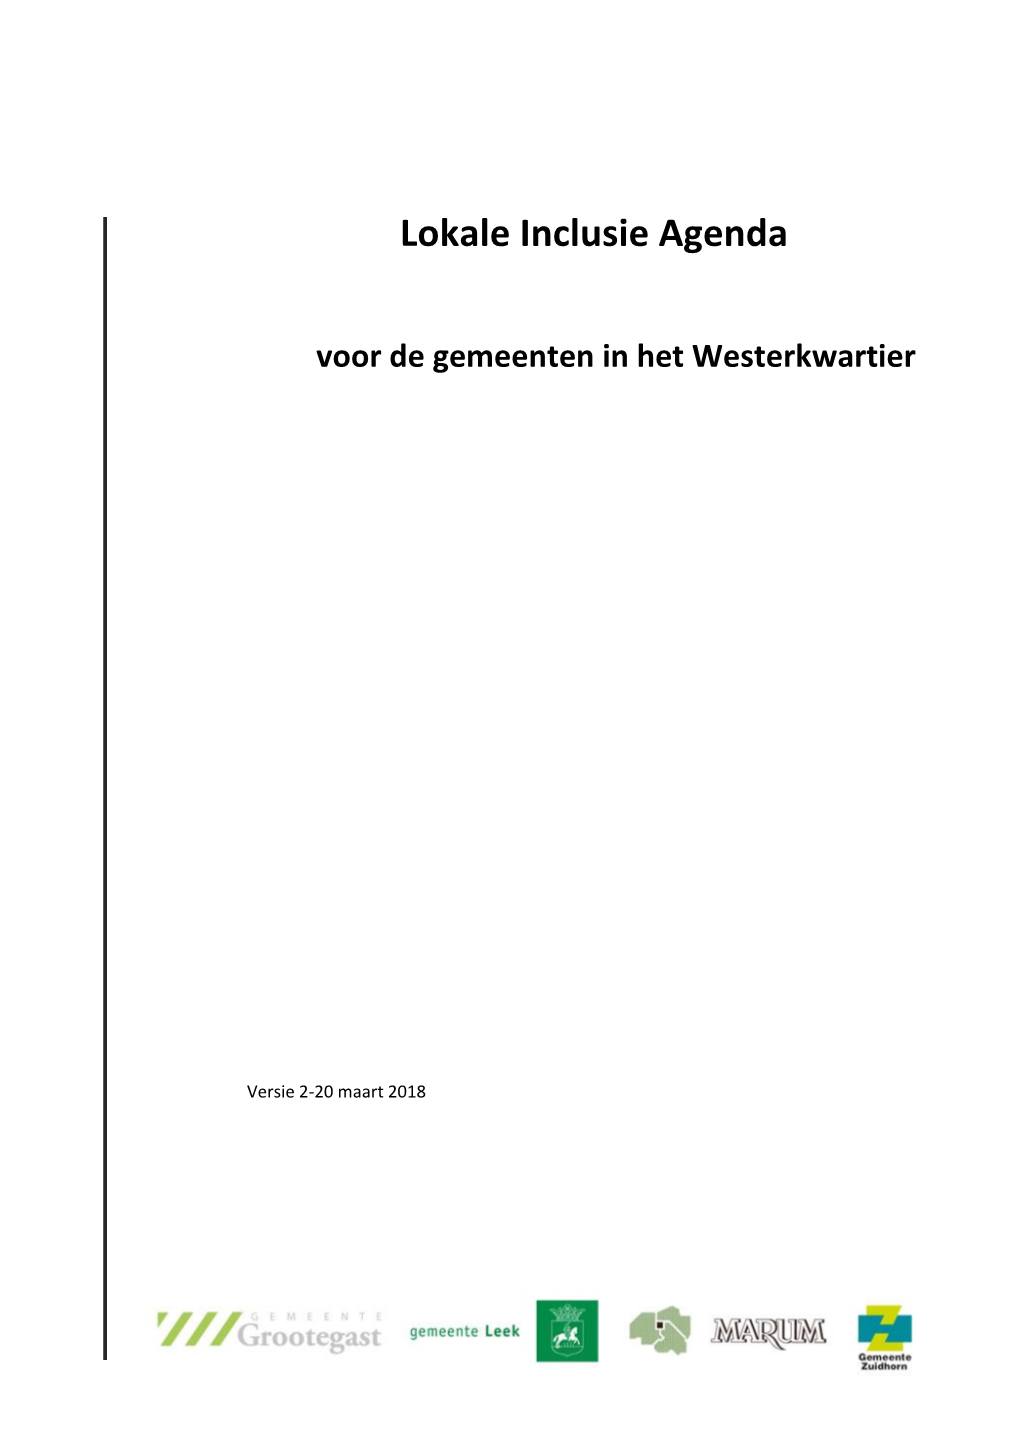 Lokale Inclusie Agenda Voor De Gemeenten in Het Westerkwartier